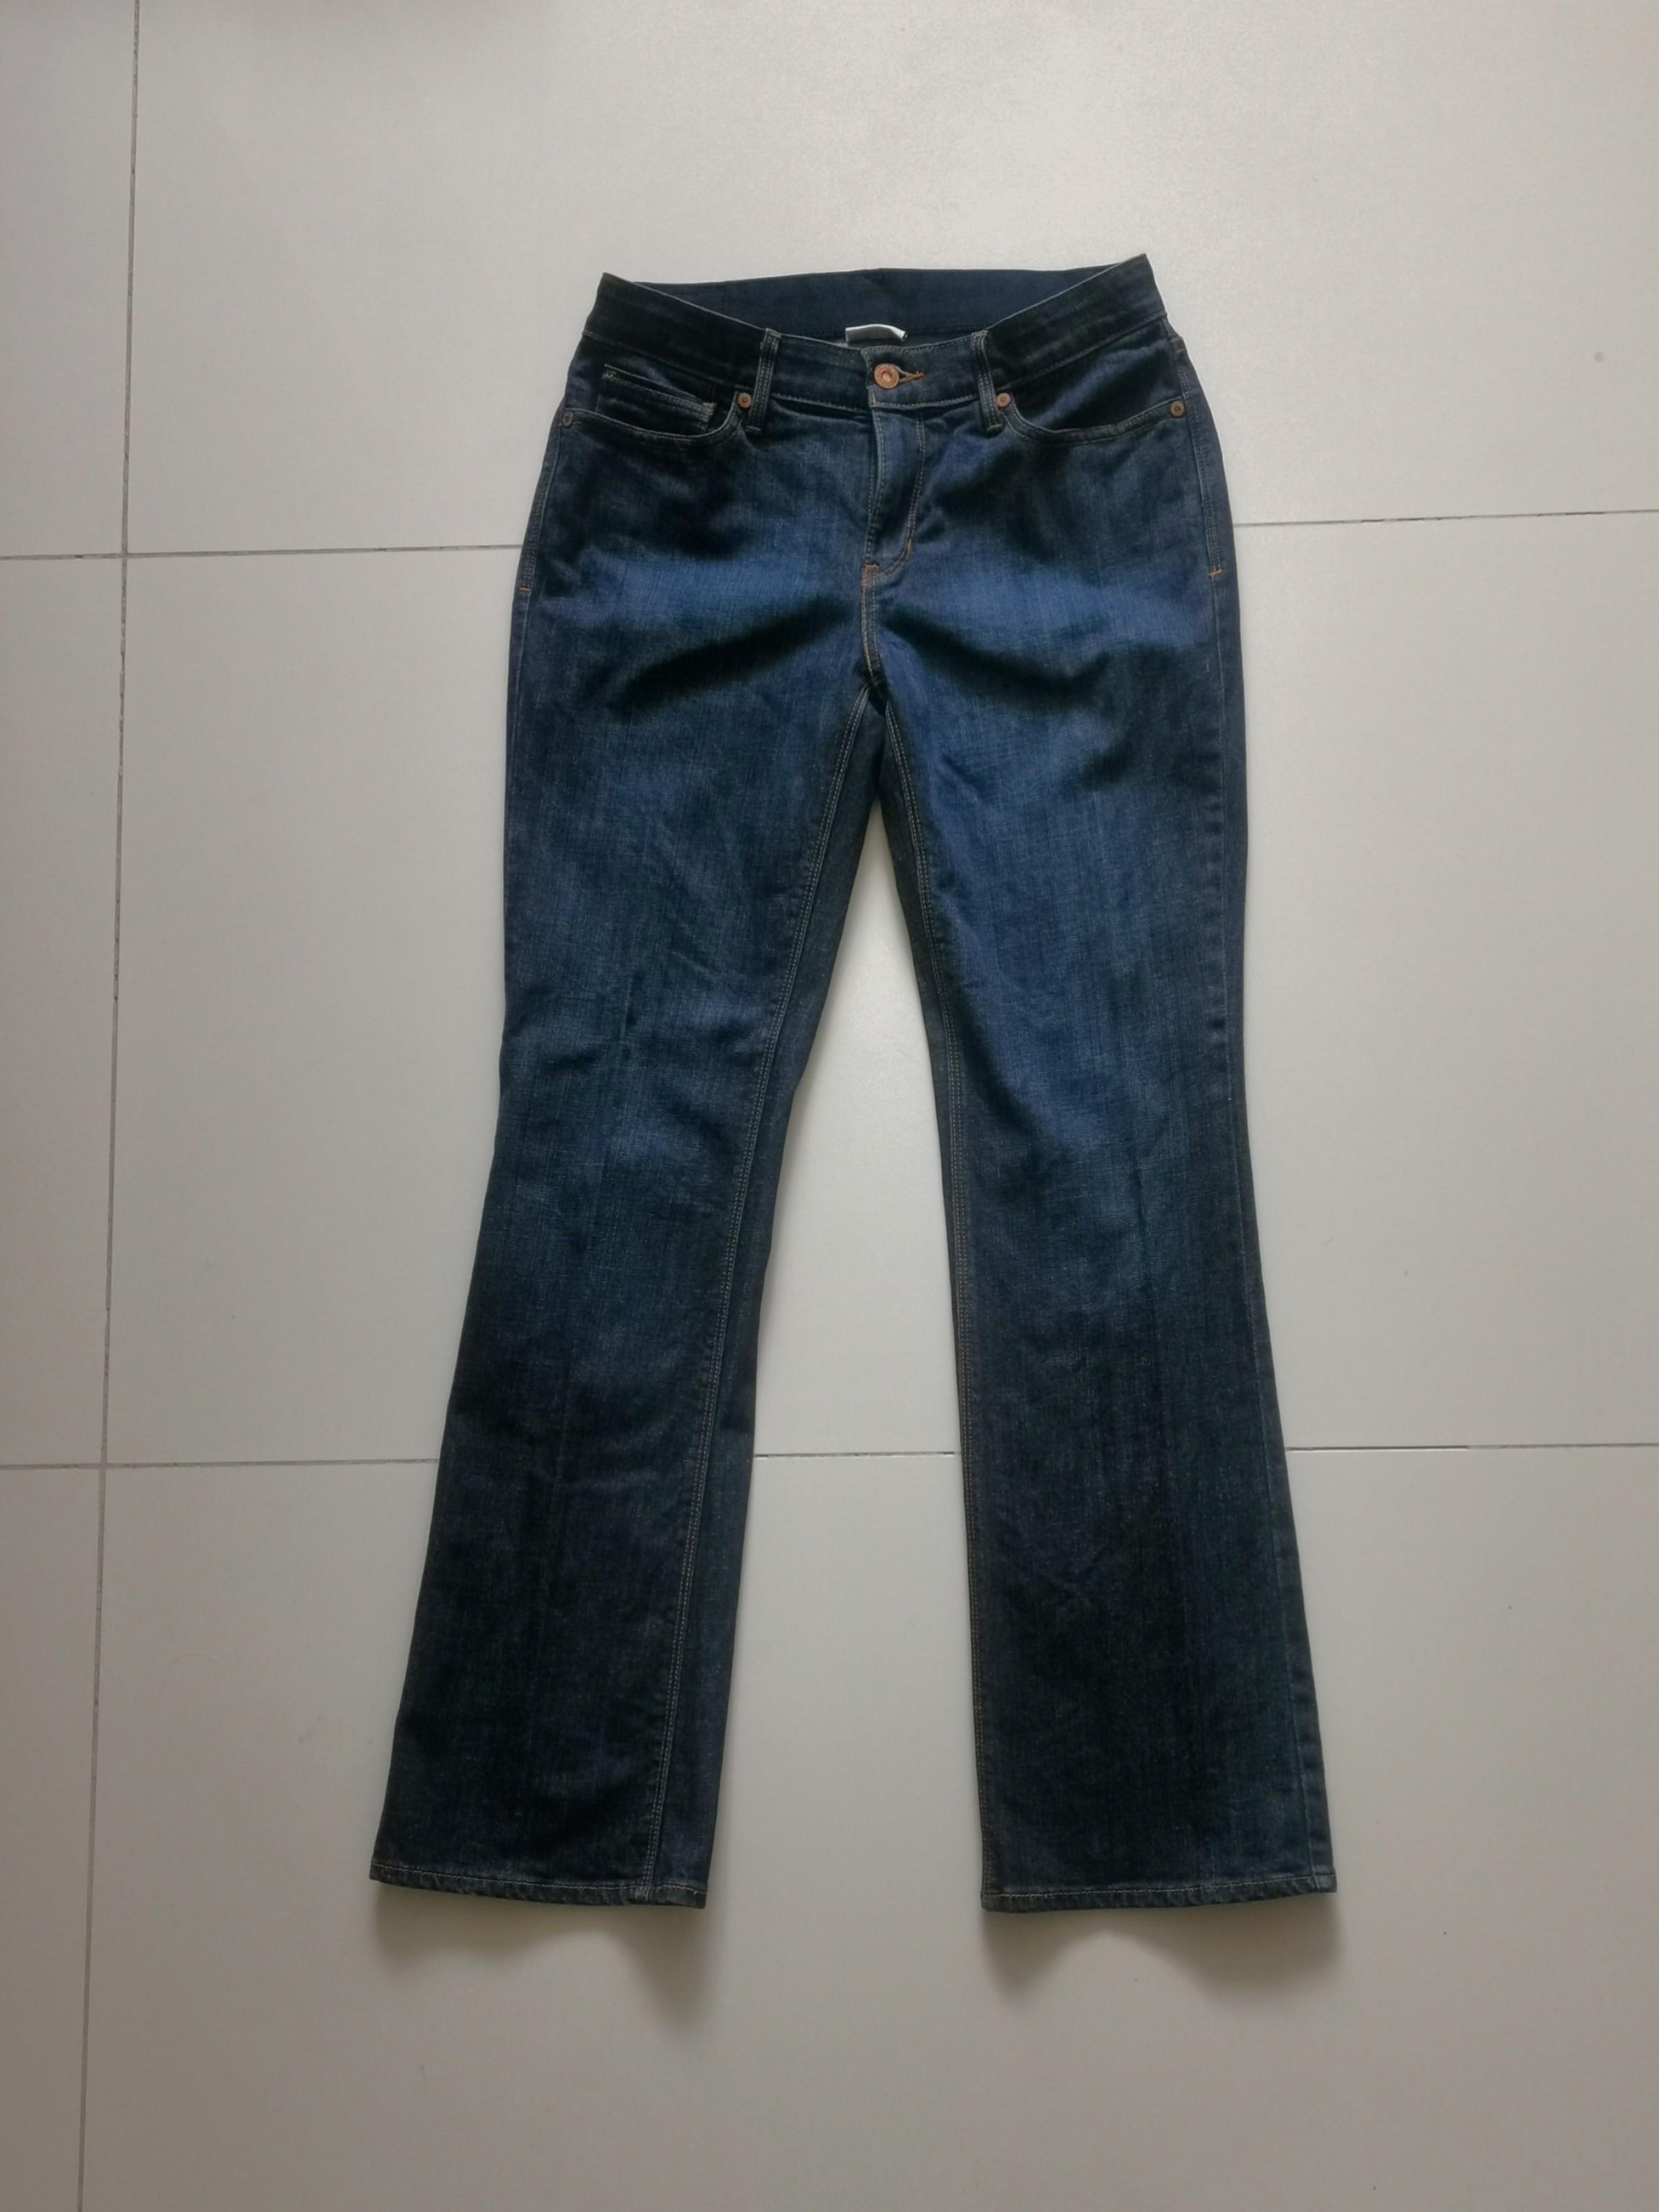 levis 525 perfect waist jeans